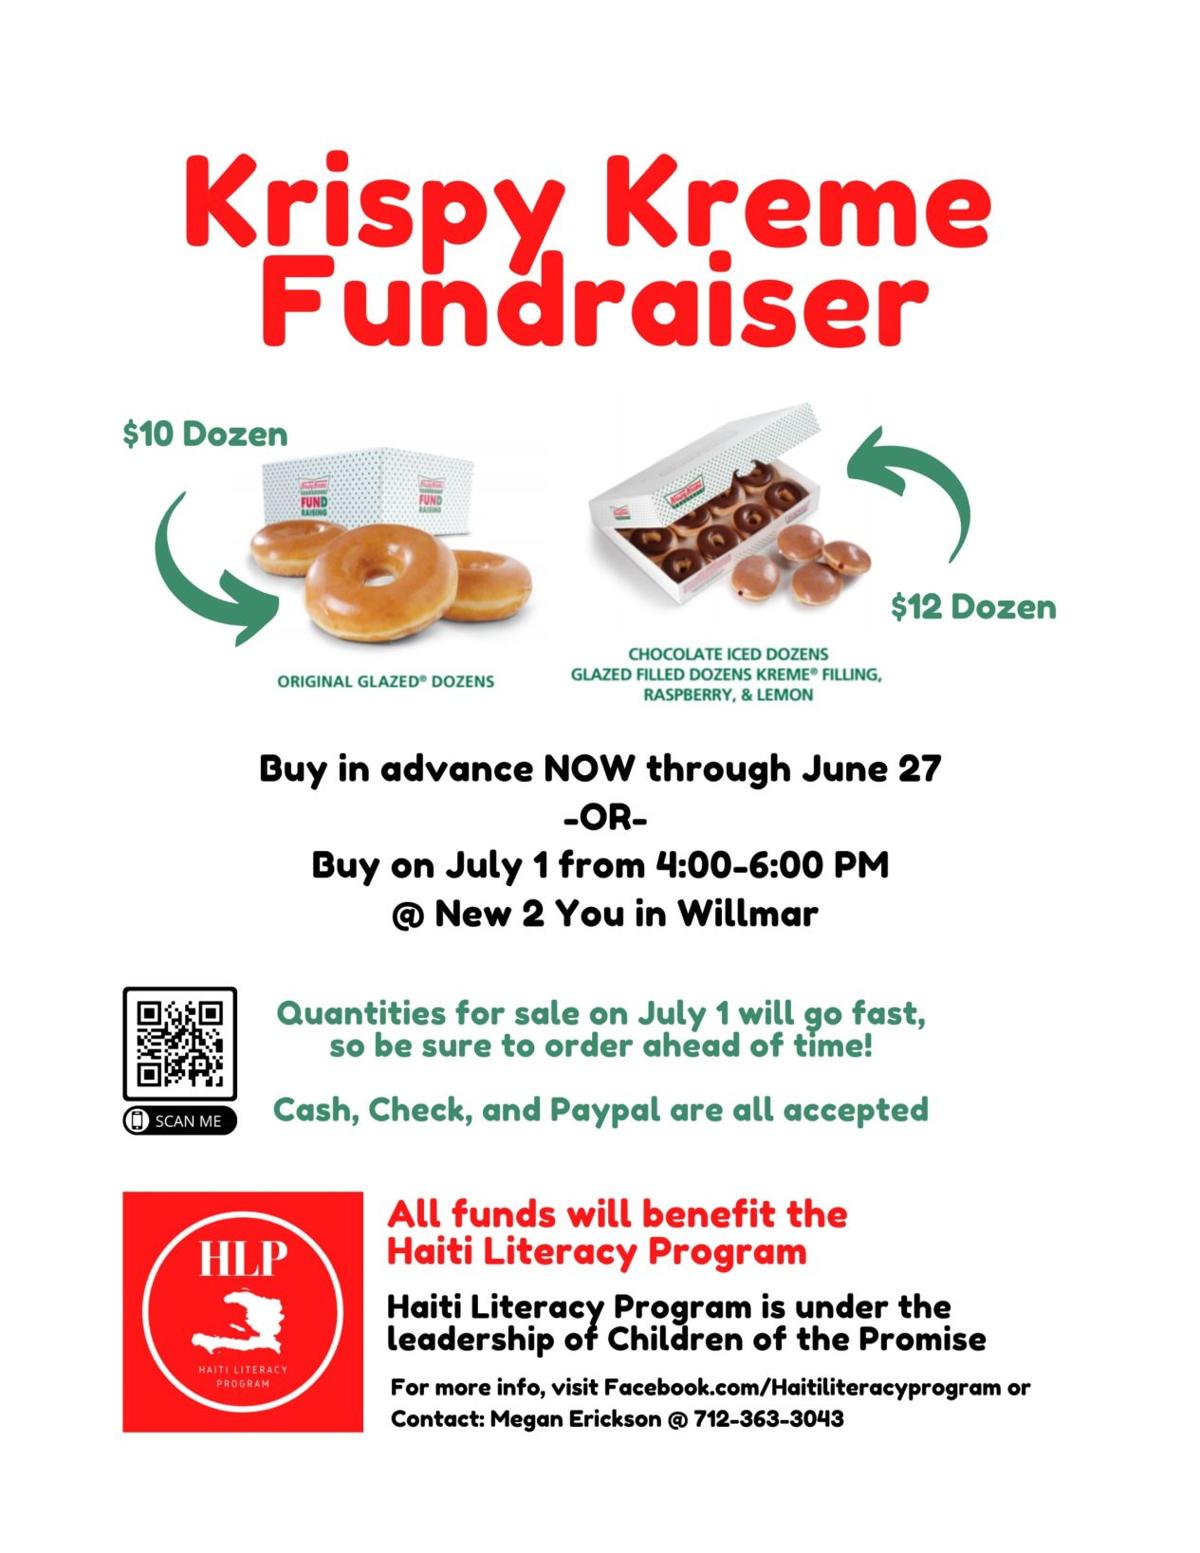 krispy-kreme-fundraiser-flyer-template